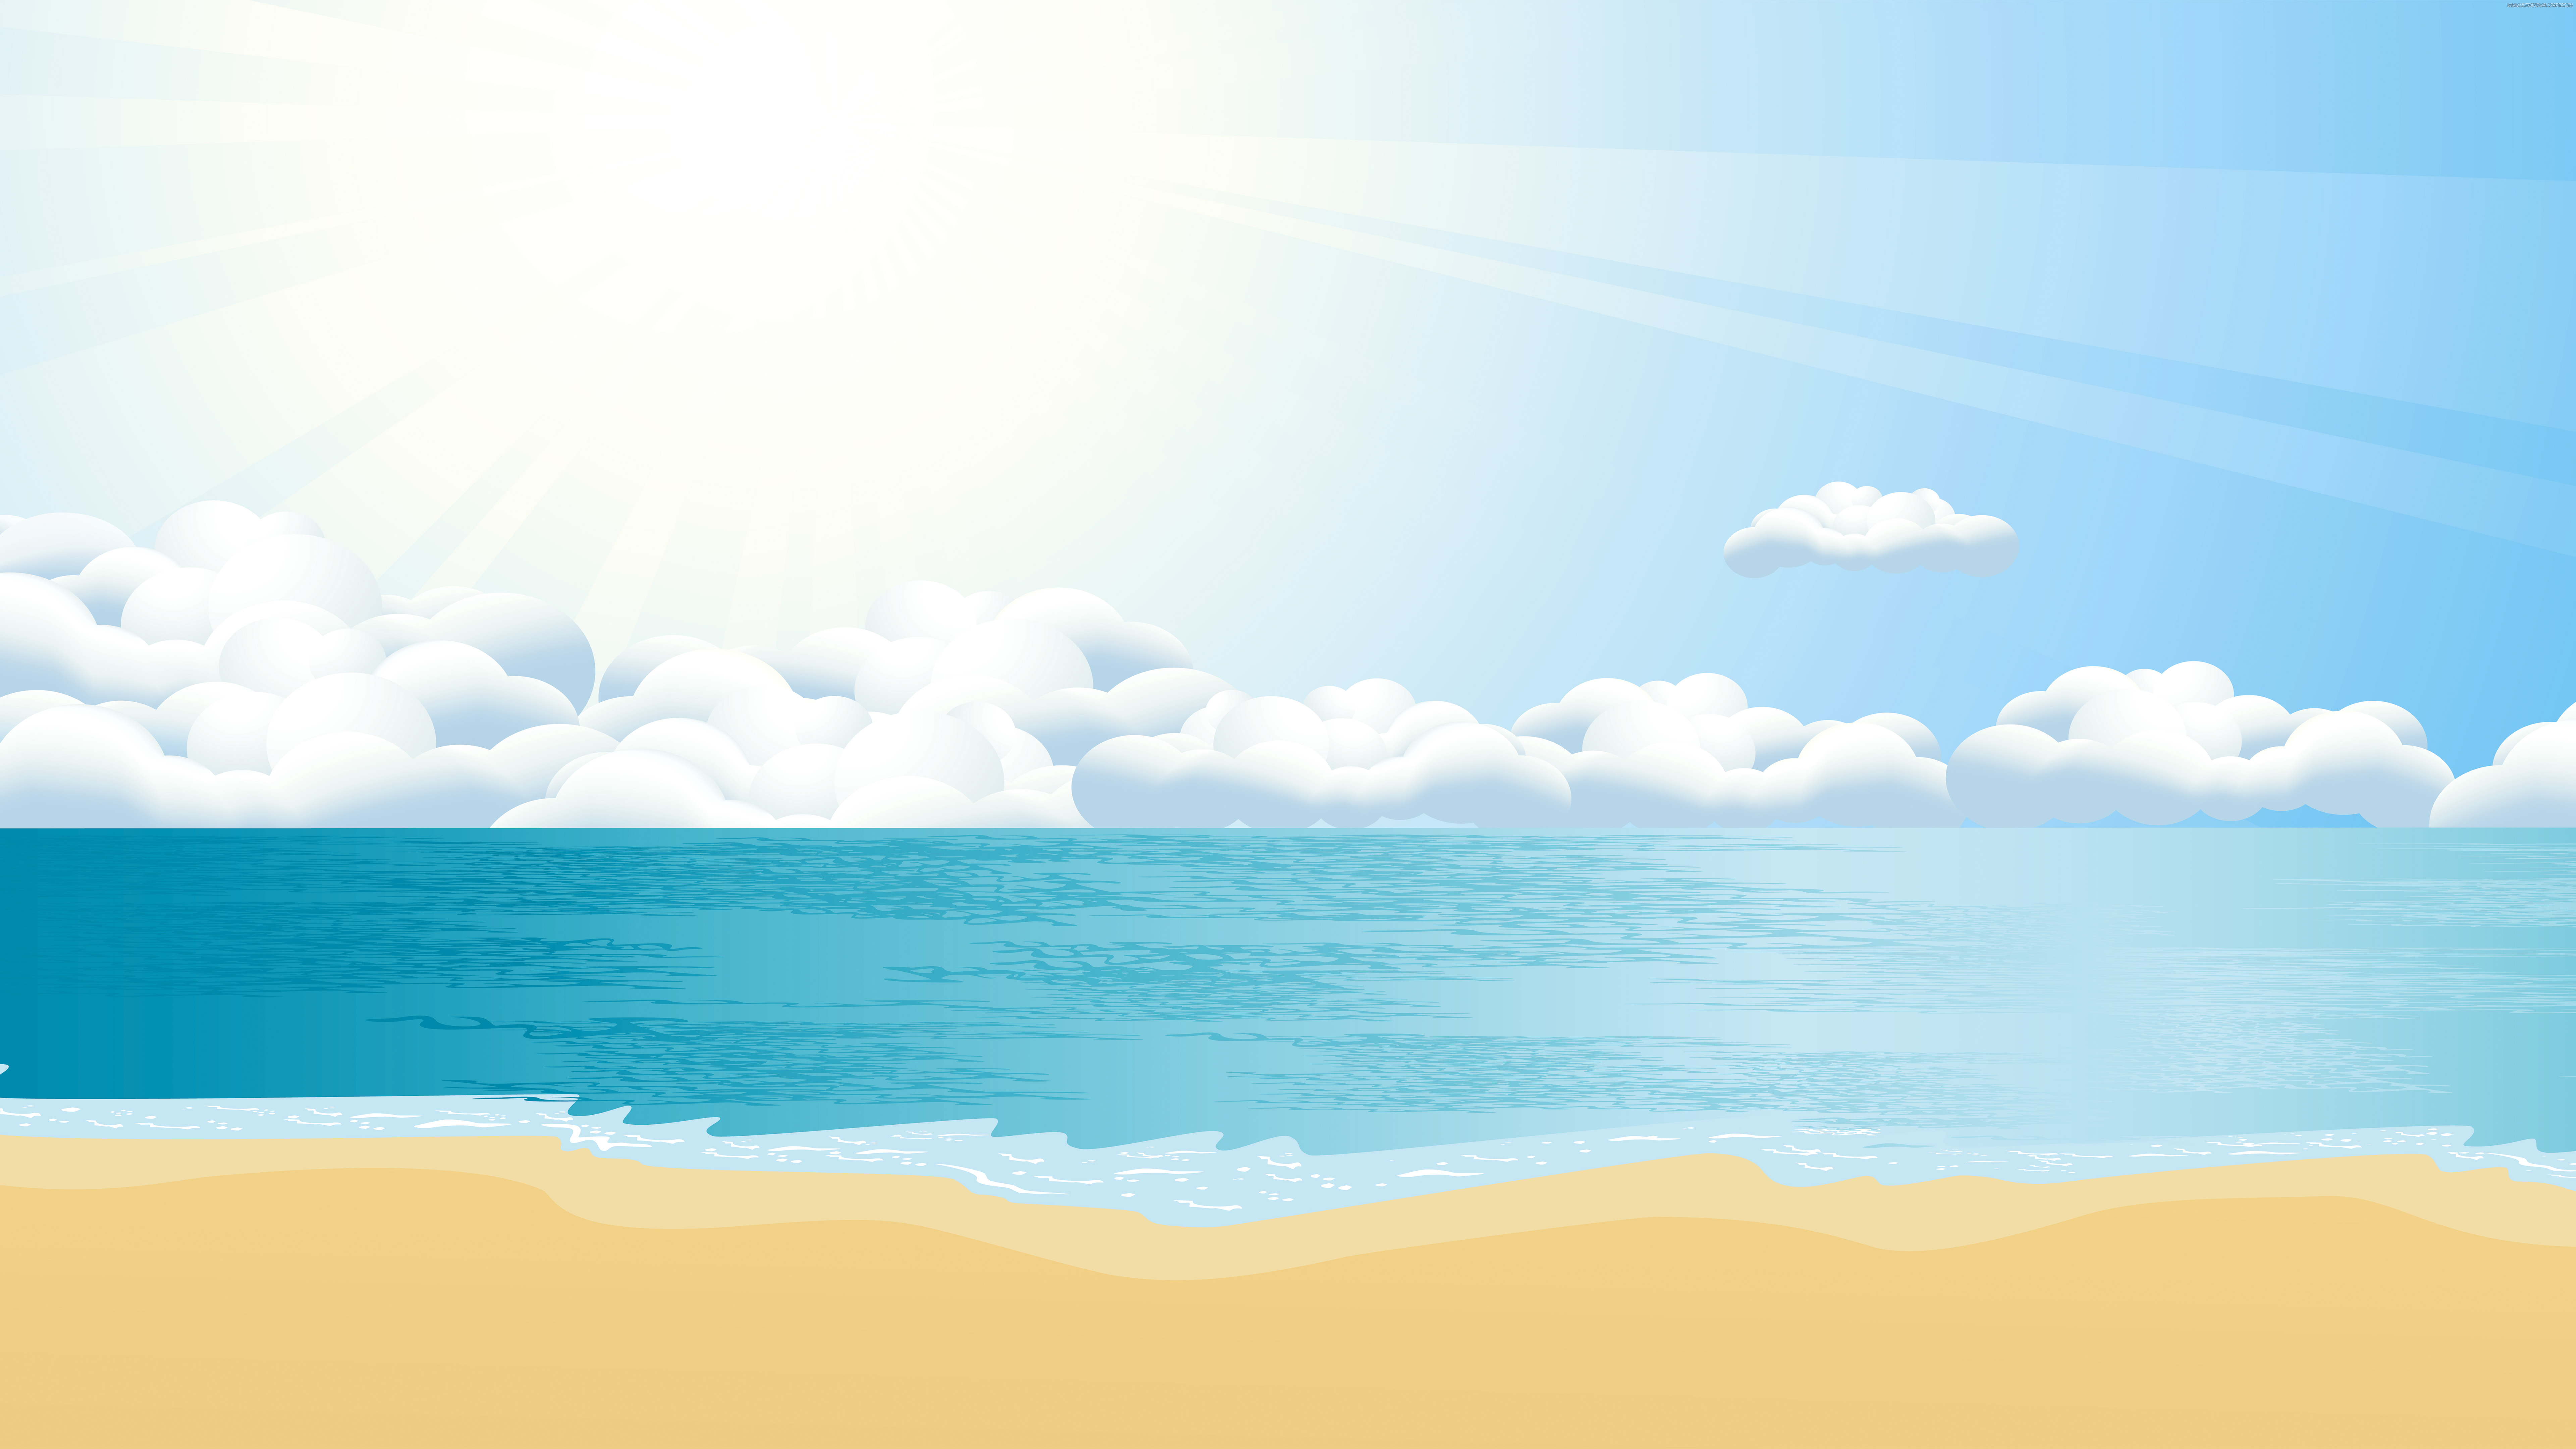 Zastaki.com - Спокойное нарисованное море с белыми облаками и желтым песком